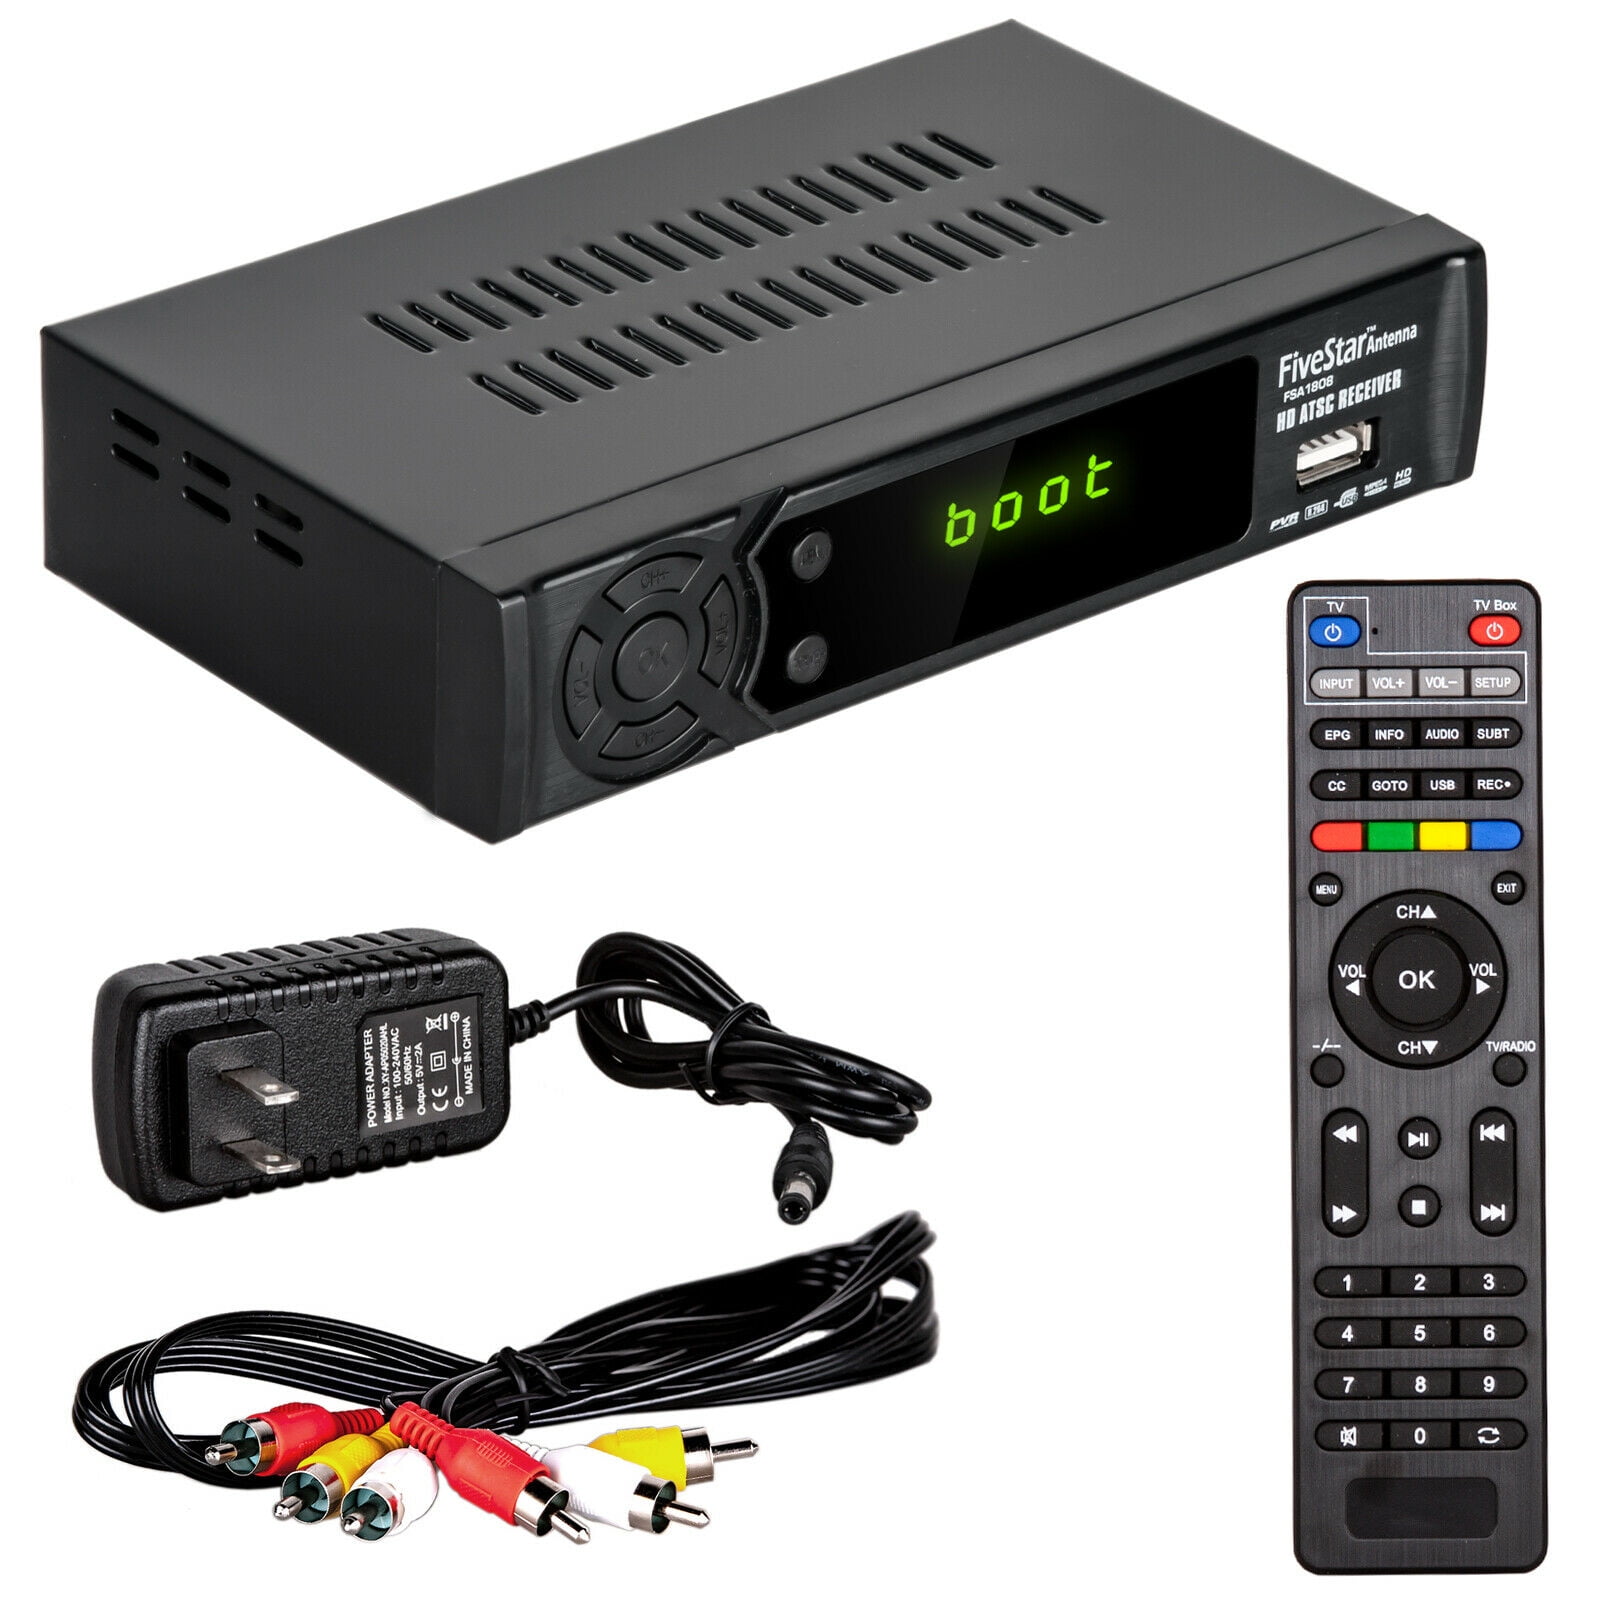 Digital Box for & HDMI Cable & Remote View/Record Local HD TV - Walmart.com